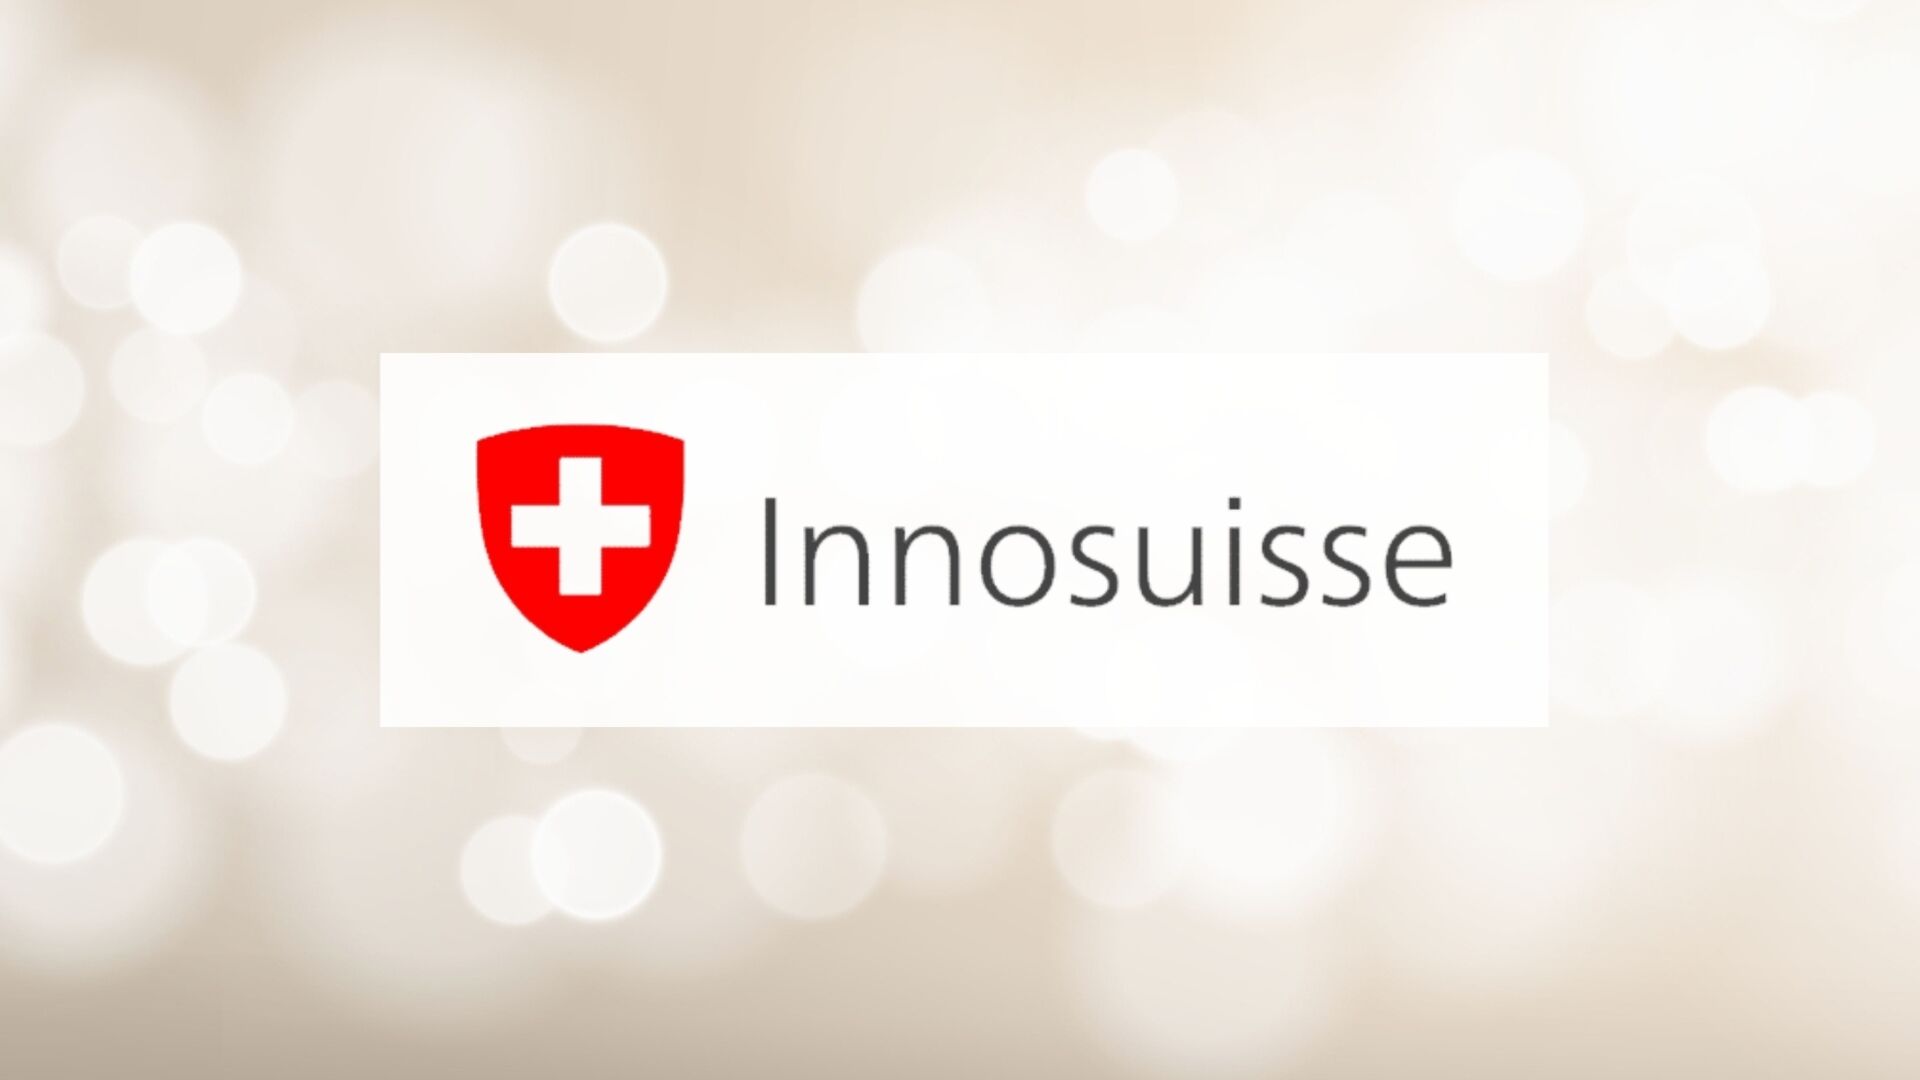 Innosuisse: Швейцарскае агенцтва па садзейнічанні інавацыям